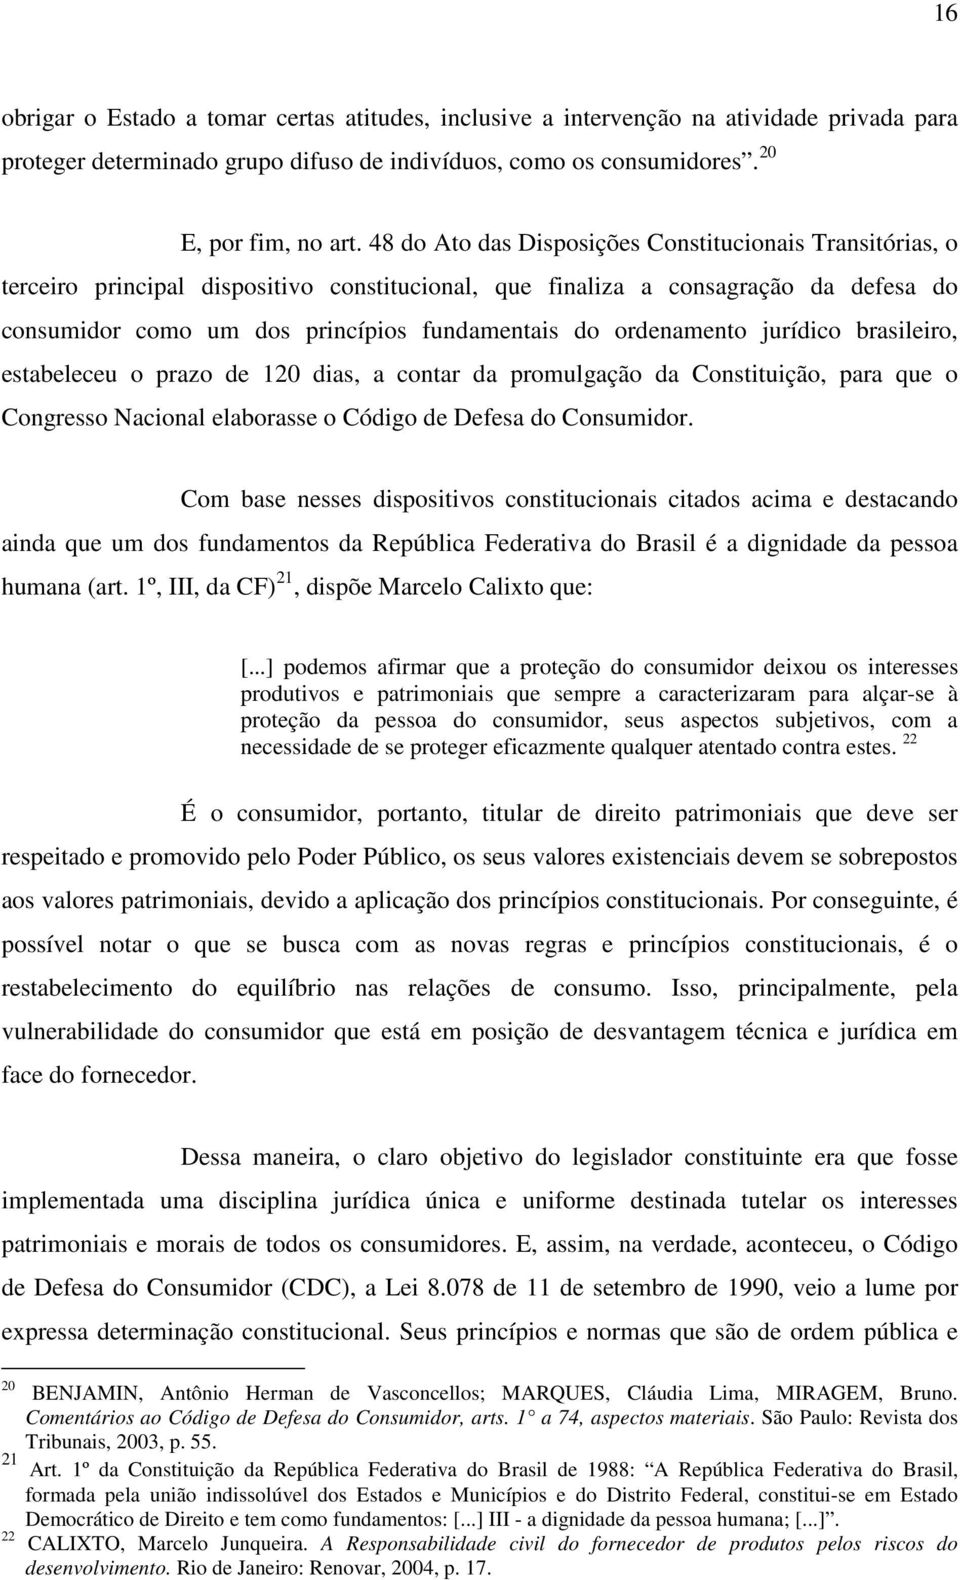 ordenamento jurídico brasileiro, estabeleceu o prazo de 120 dias, a contar da promulgação da Constituição, para que o Congresso Nacional elaborasse o Código de Defesa do Consumidor.